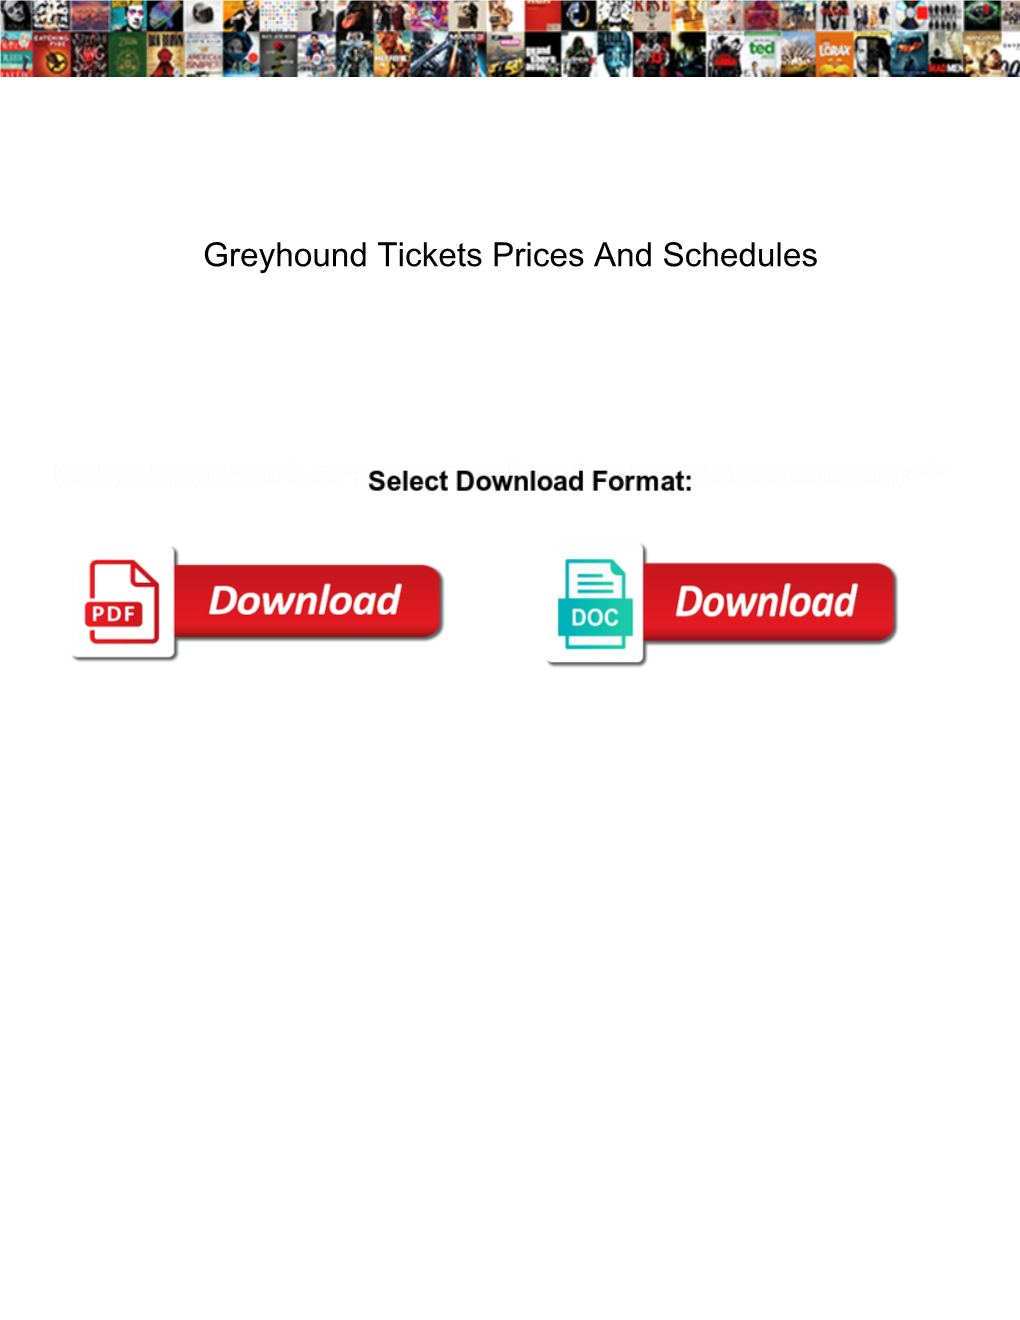 Greyhound Tickets Prices and Schedules